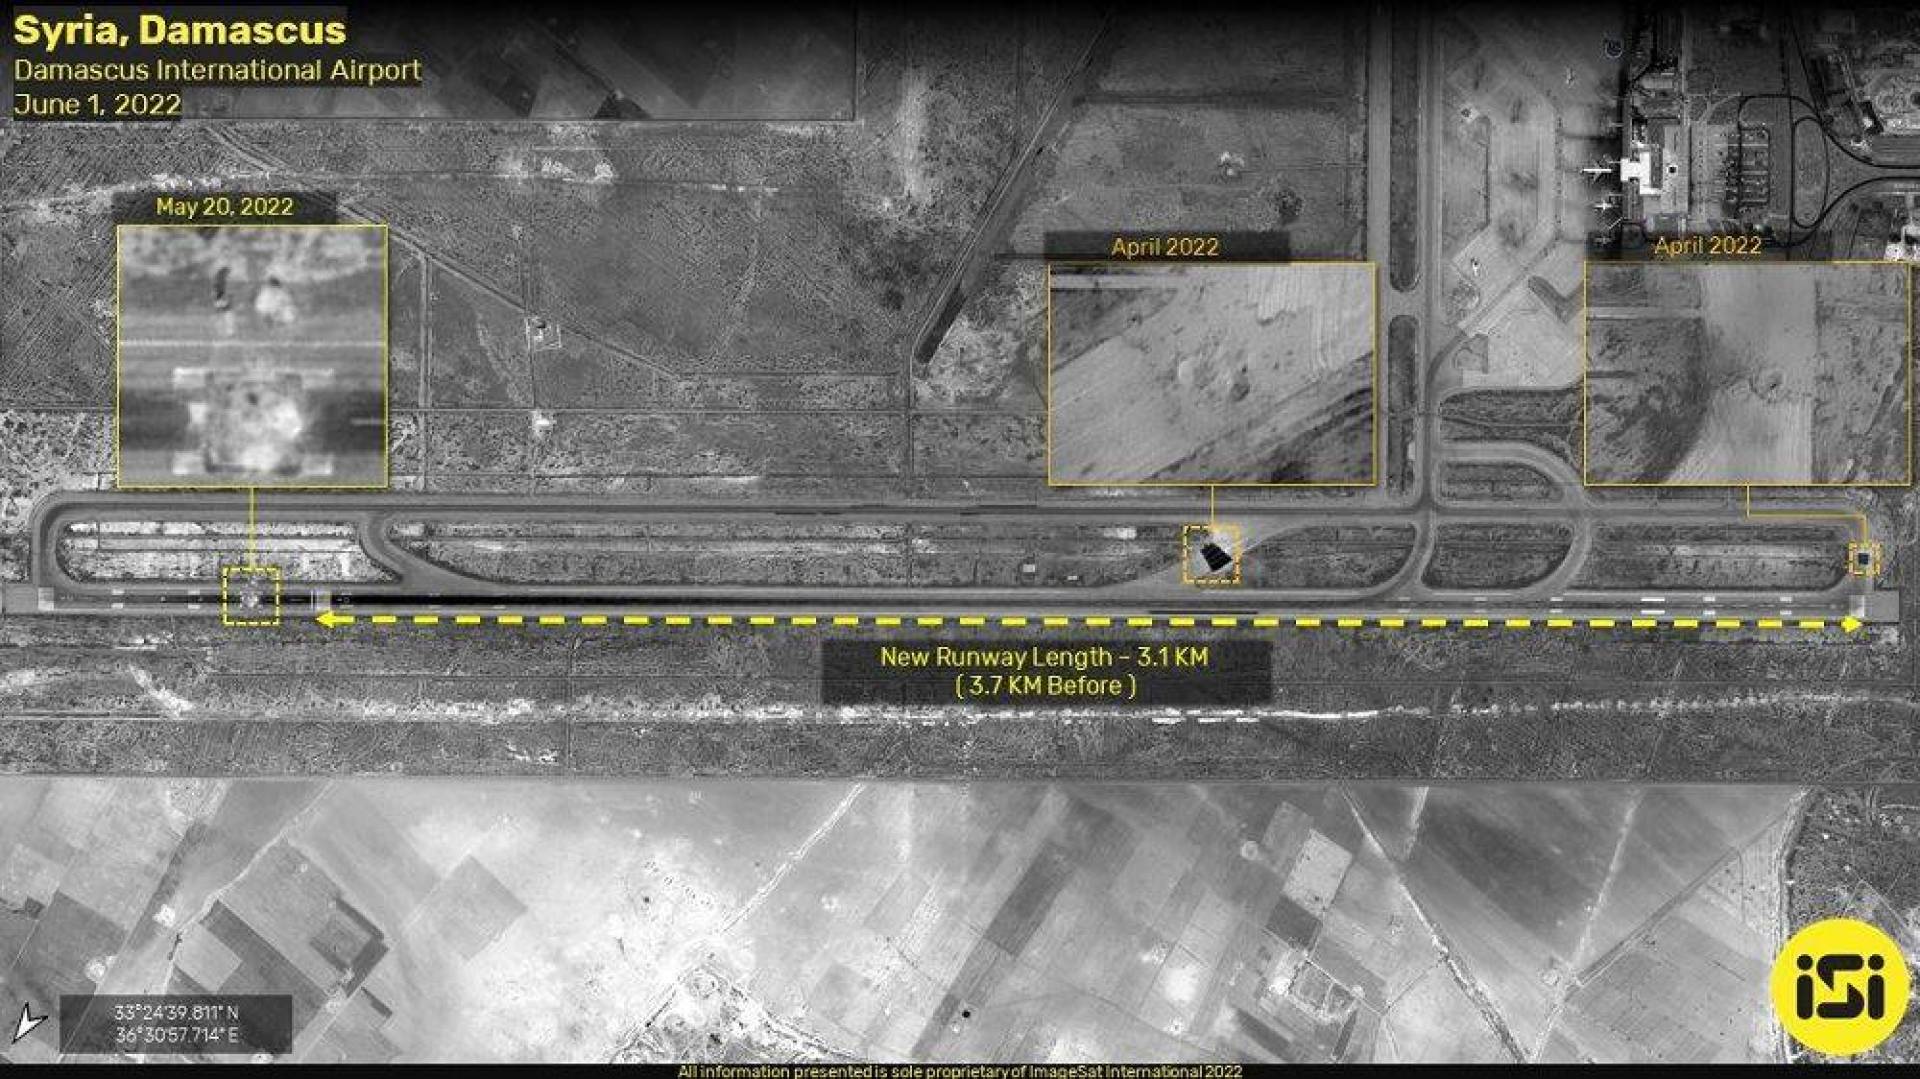 قناة عبرية تكشف عن سبب قصف مطار دمشق